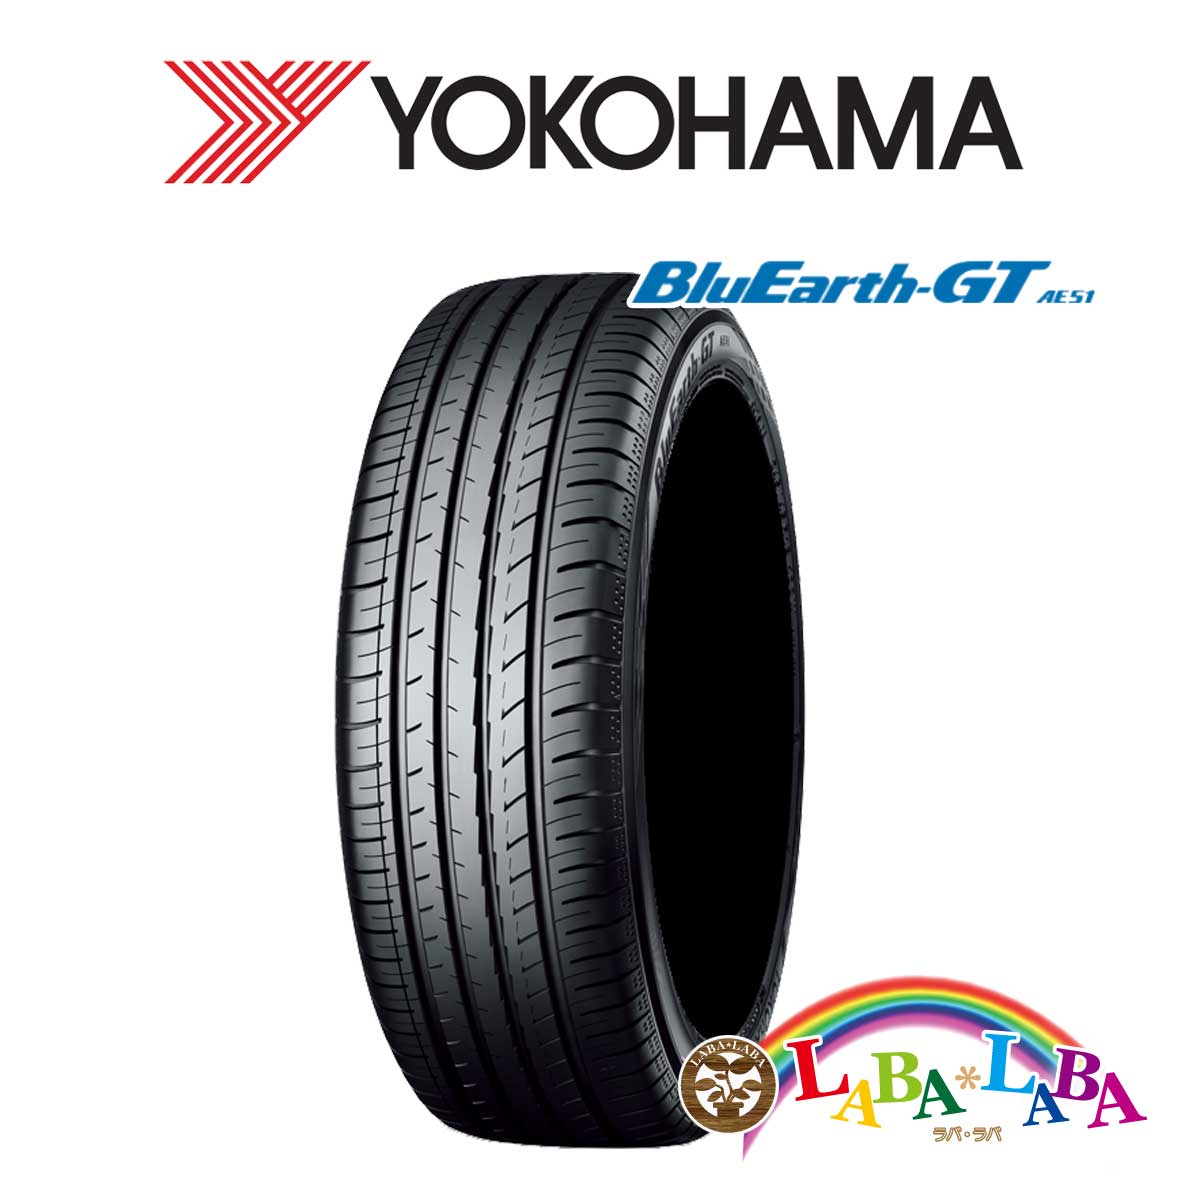 ２本以上送料無料 国産タイヤ サマータイヤ 新品(タイヤのみ) YOKOHAMA ヨコハマ BluEarth-GT ブルーアース AE51 215/65R16 98H サマータイヤ